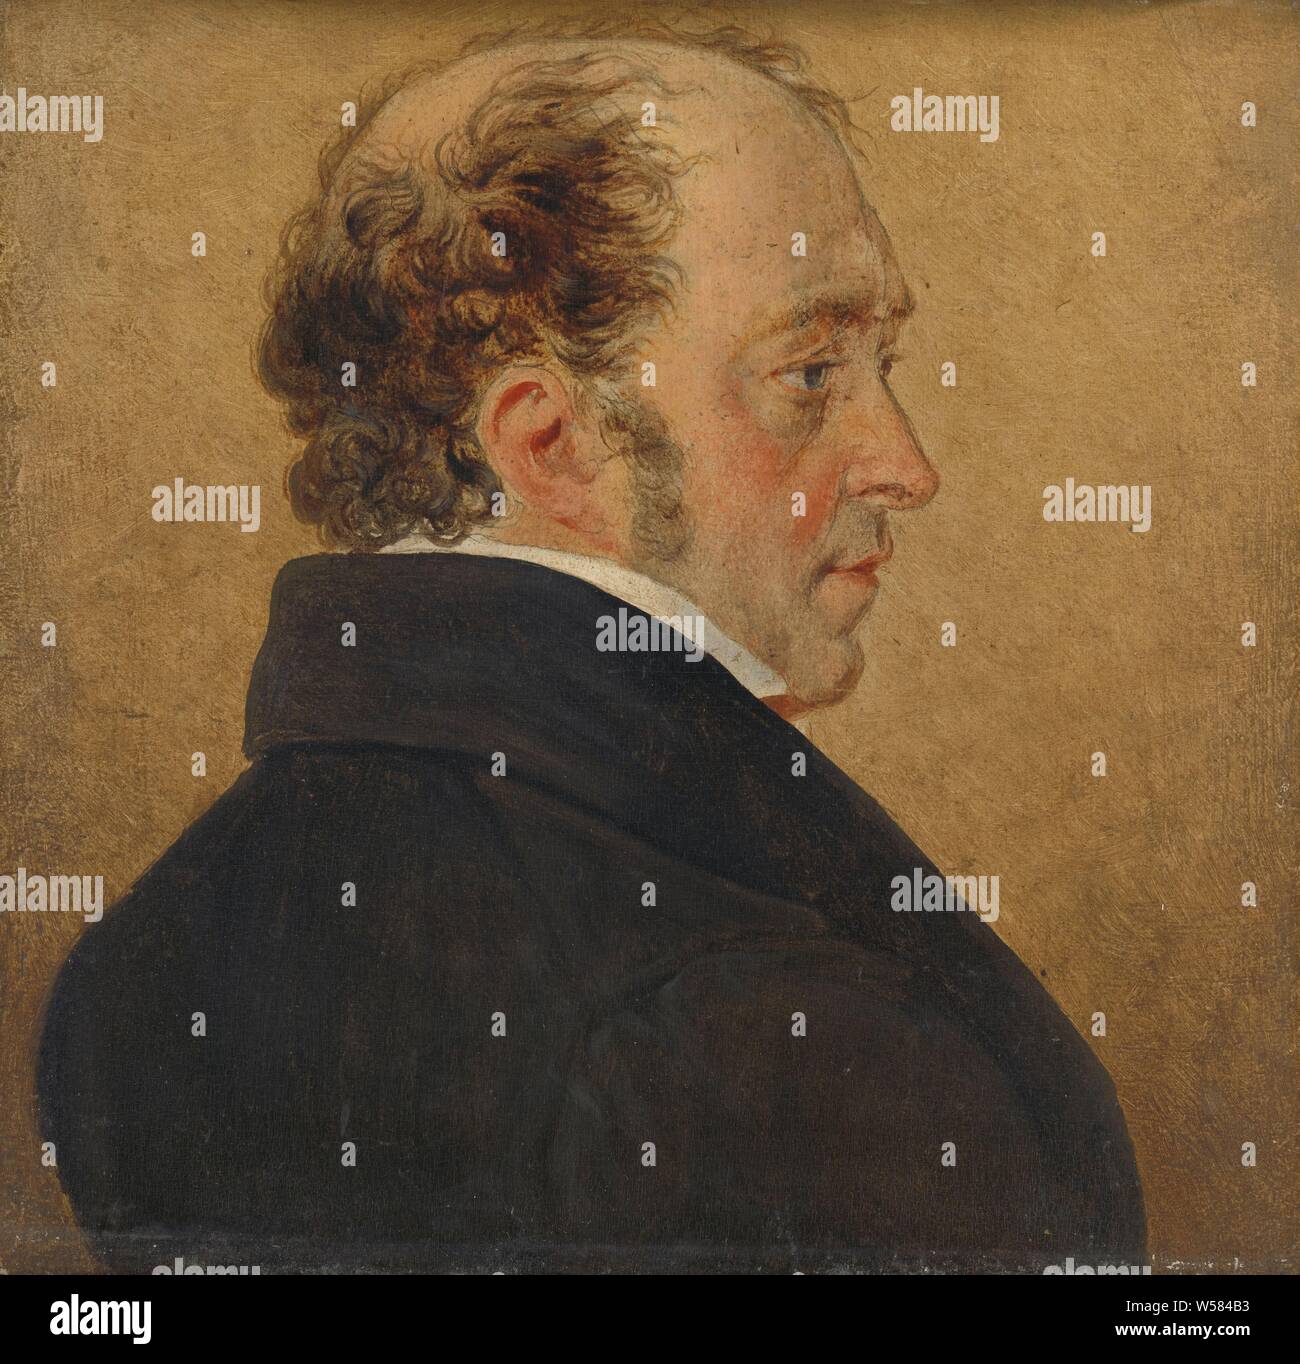 Self-Portrait, Self-portrait of the painter Mattheus Ignatius van Bree., Mattheus Ignatius van Bree, c. 1800 - c. 1839, panel, oil paint (paint), h 15.2 cm × w 14.9 cm d 4.1 cm Stock Photo